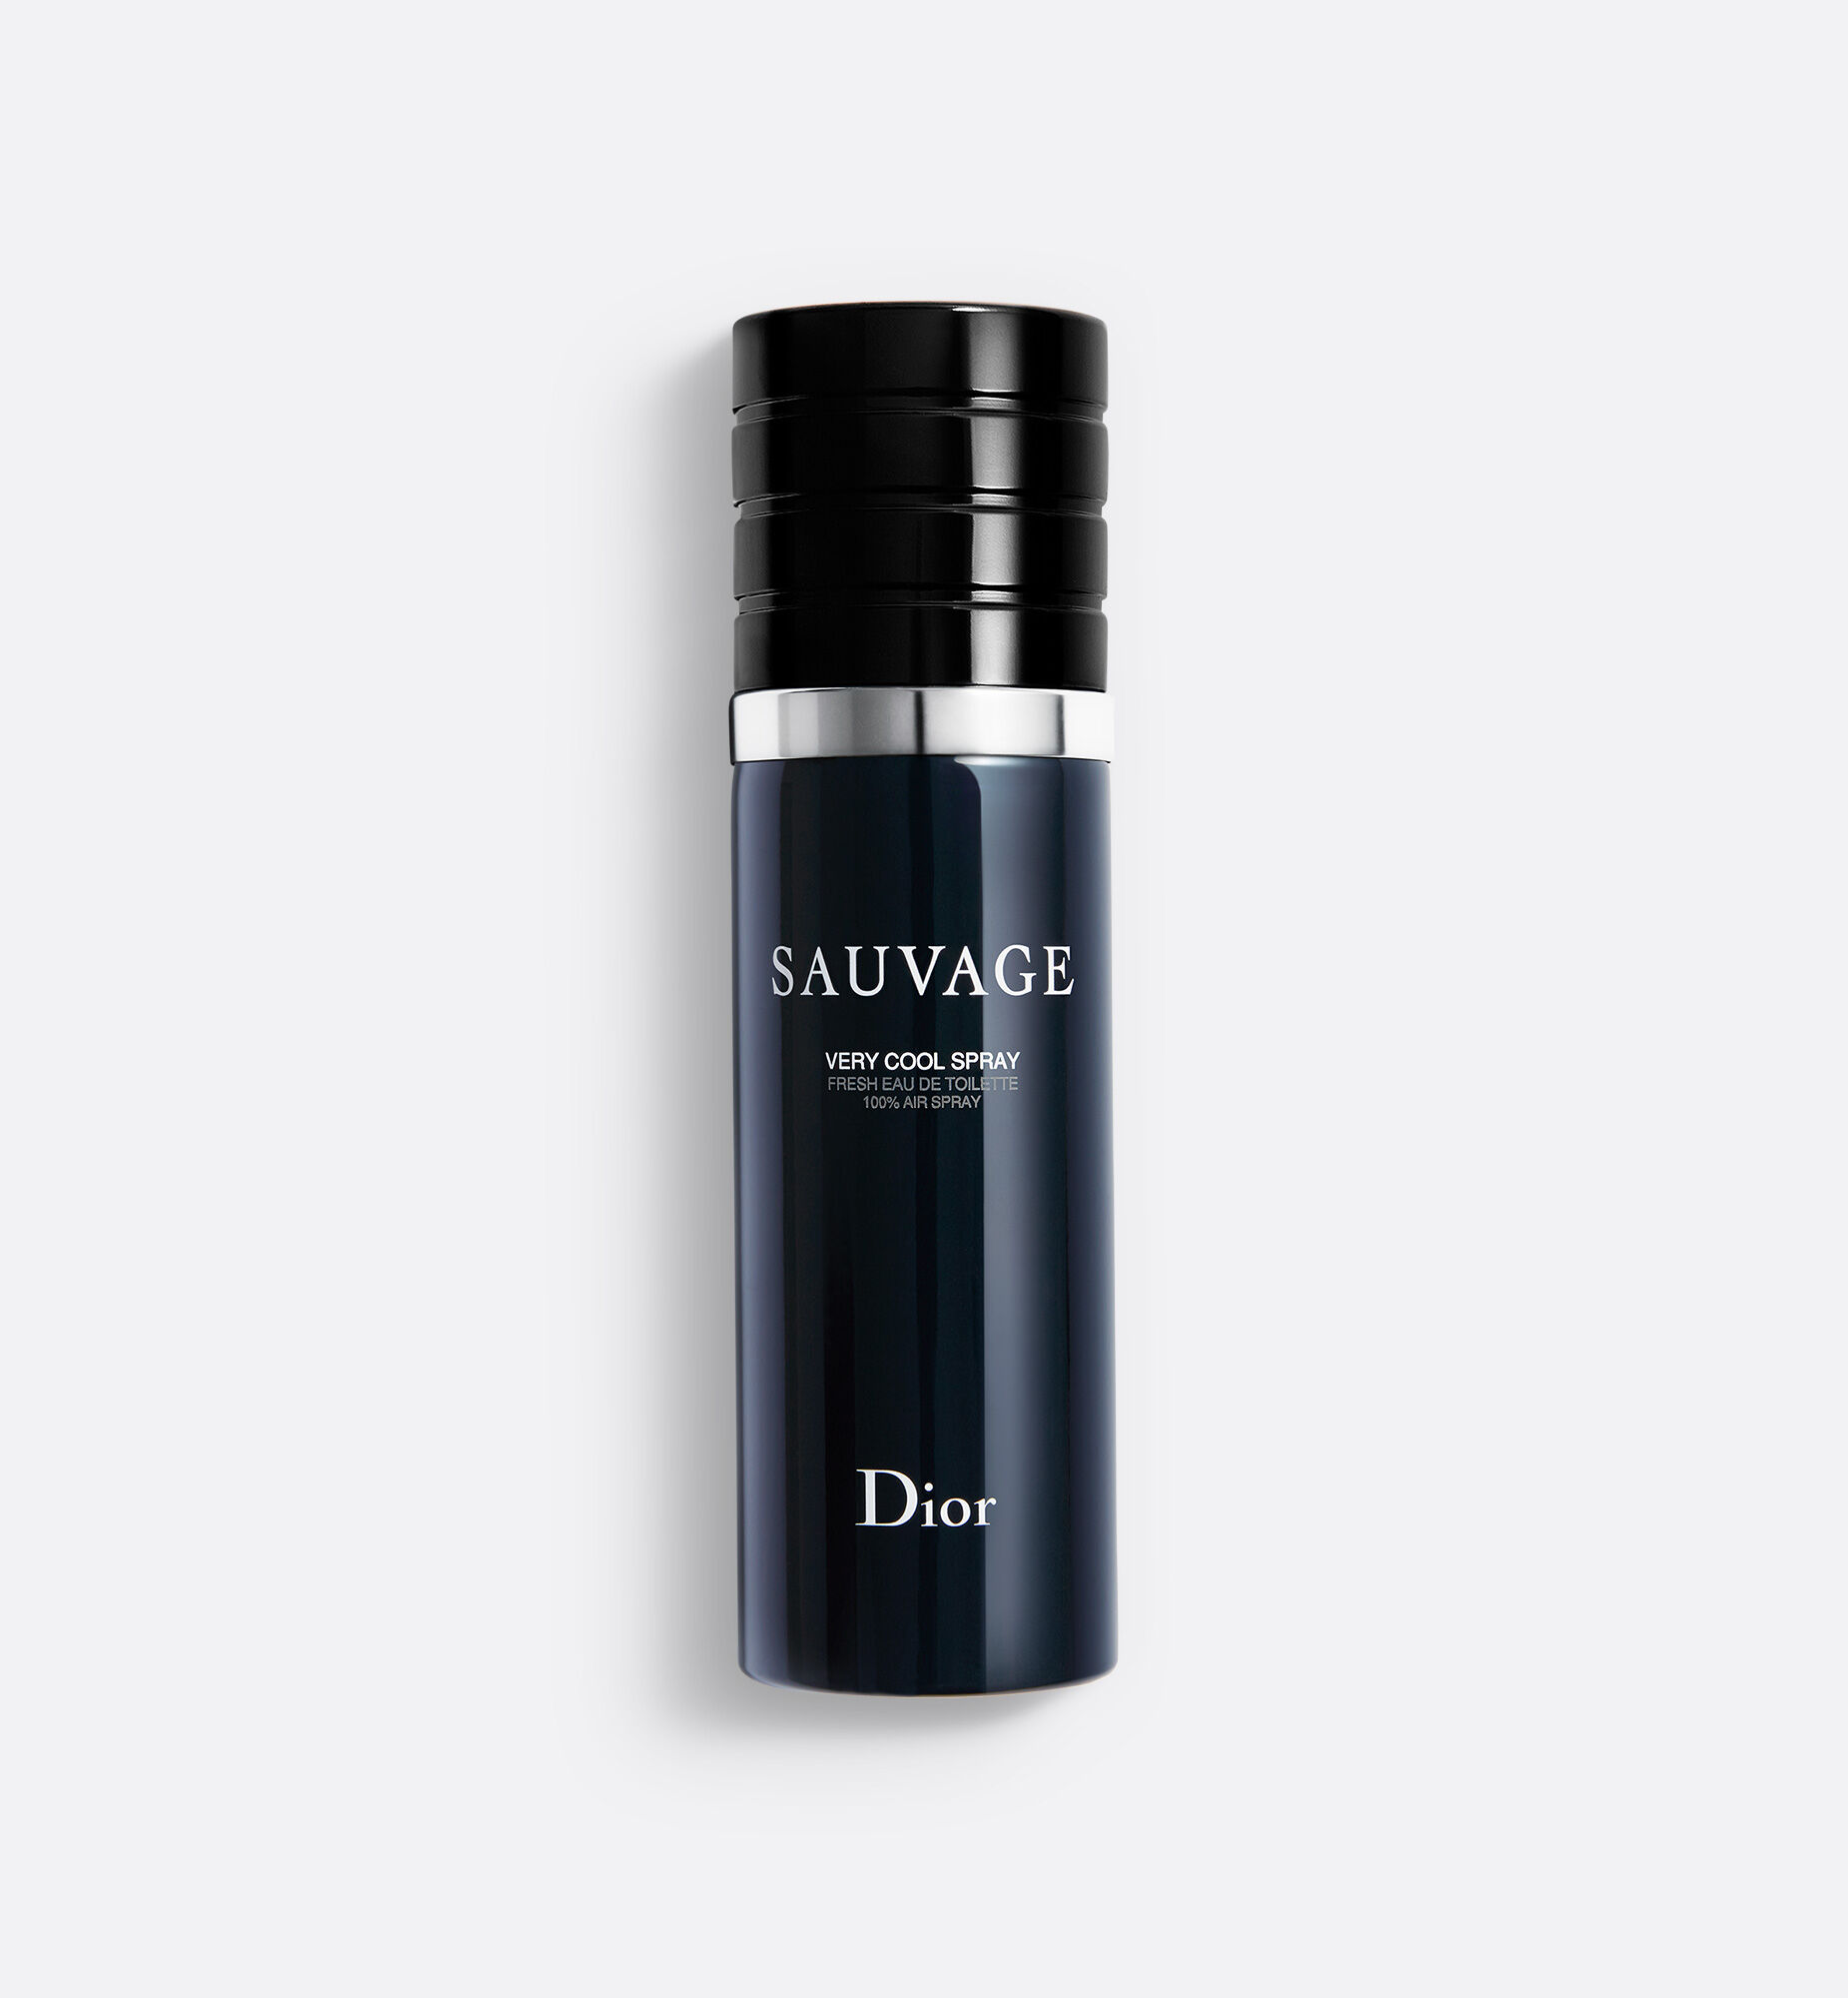 Sauvage Very cool spray - fresh eau de toilette - 100% air spray 